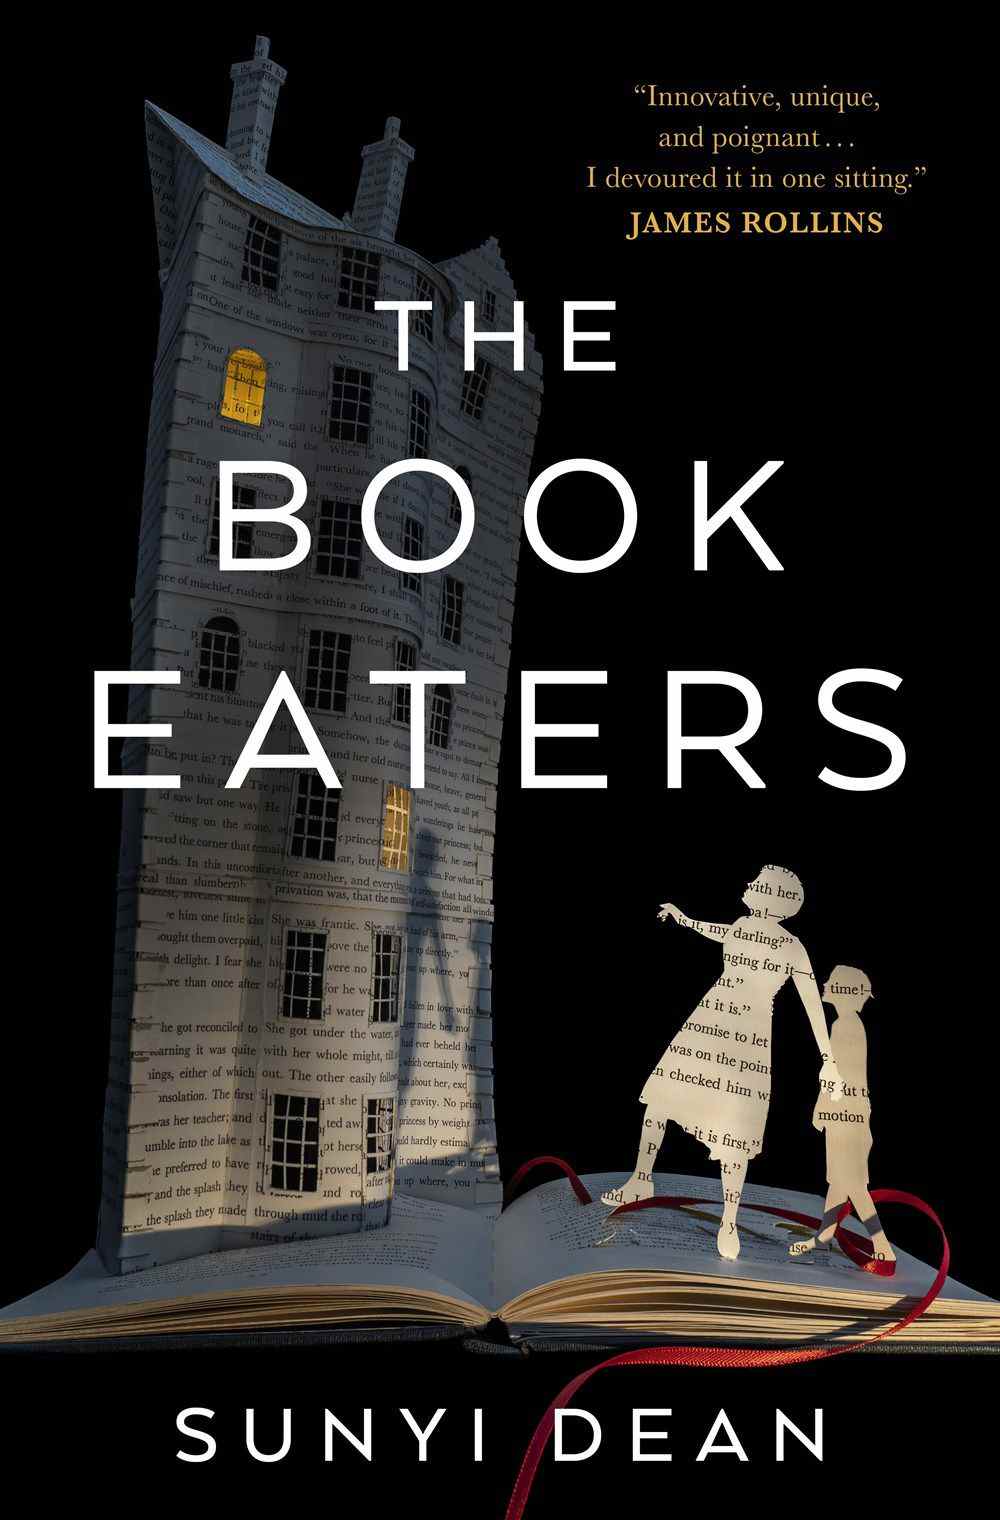 Image de couverture de The Book Eaters de Sunyi Dean, avec une image de diorama d'un parent et d'un enfant et d'une maison, tous faits de pages d'un livre, debout sur un livre.